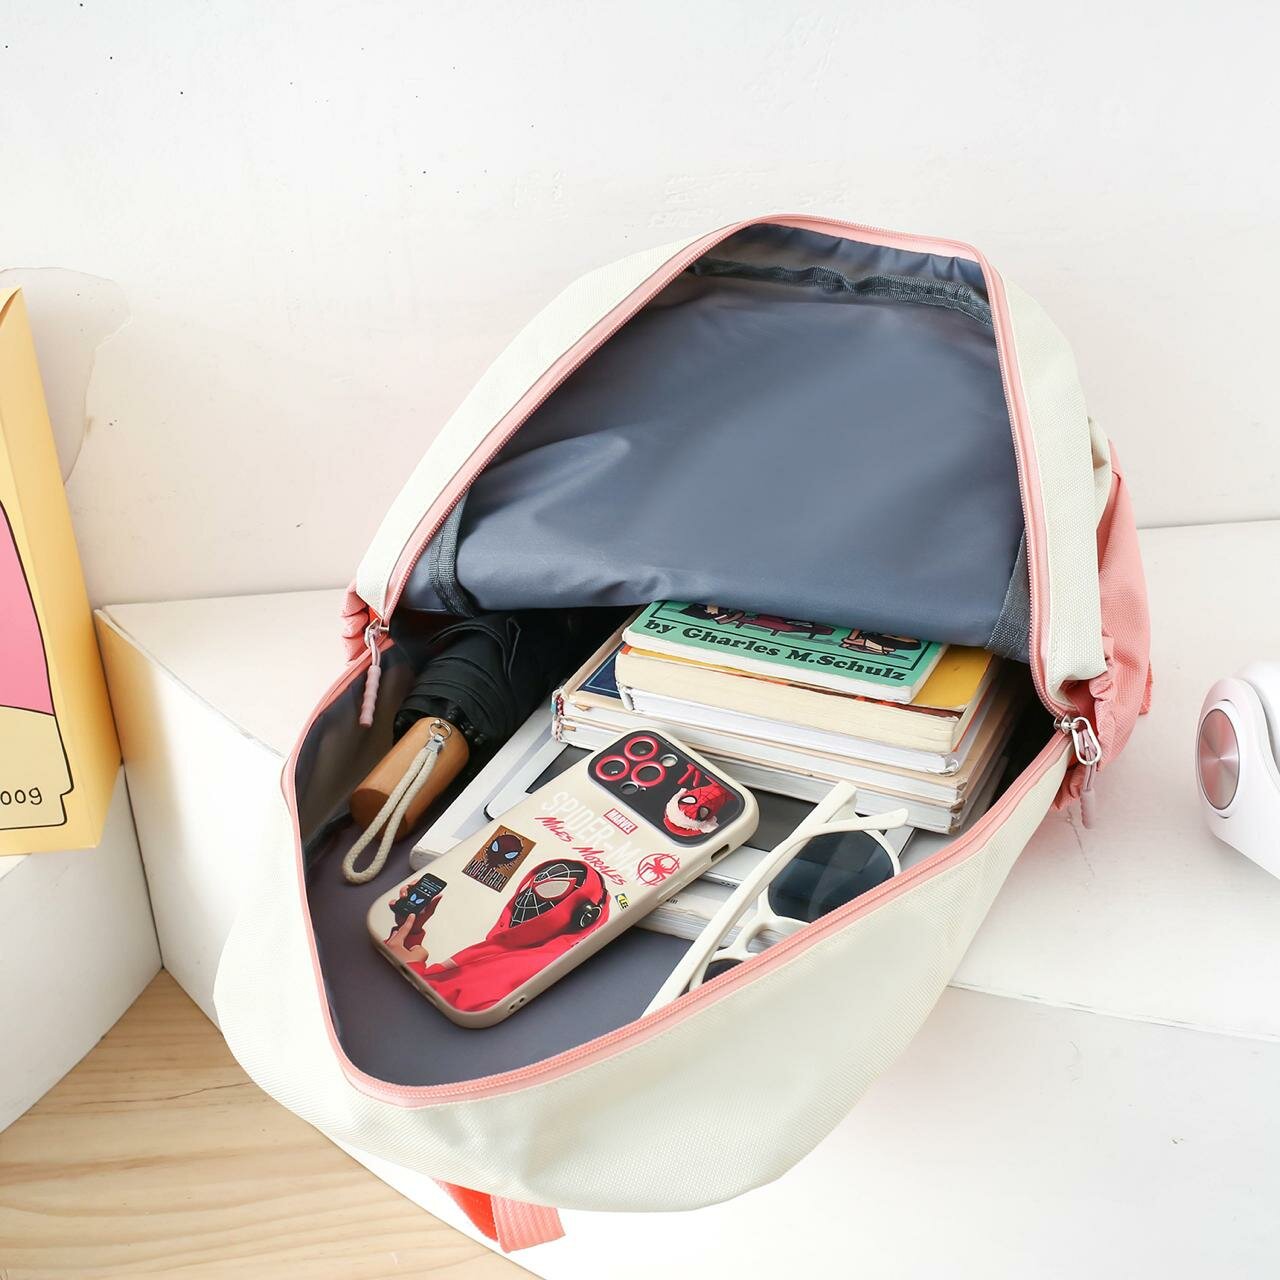 Рюкзак для девочки с комплектом 3в1 детский пенал, сумки, рюкзак для подростков девочек и для прогулки школьный набор уши-кролика1